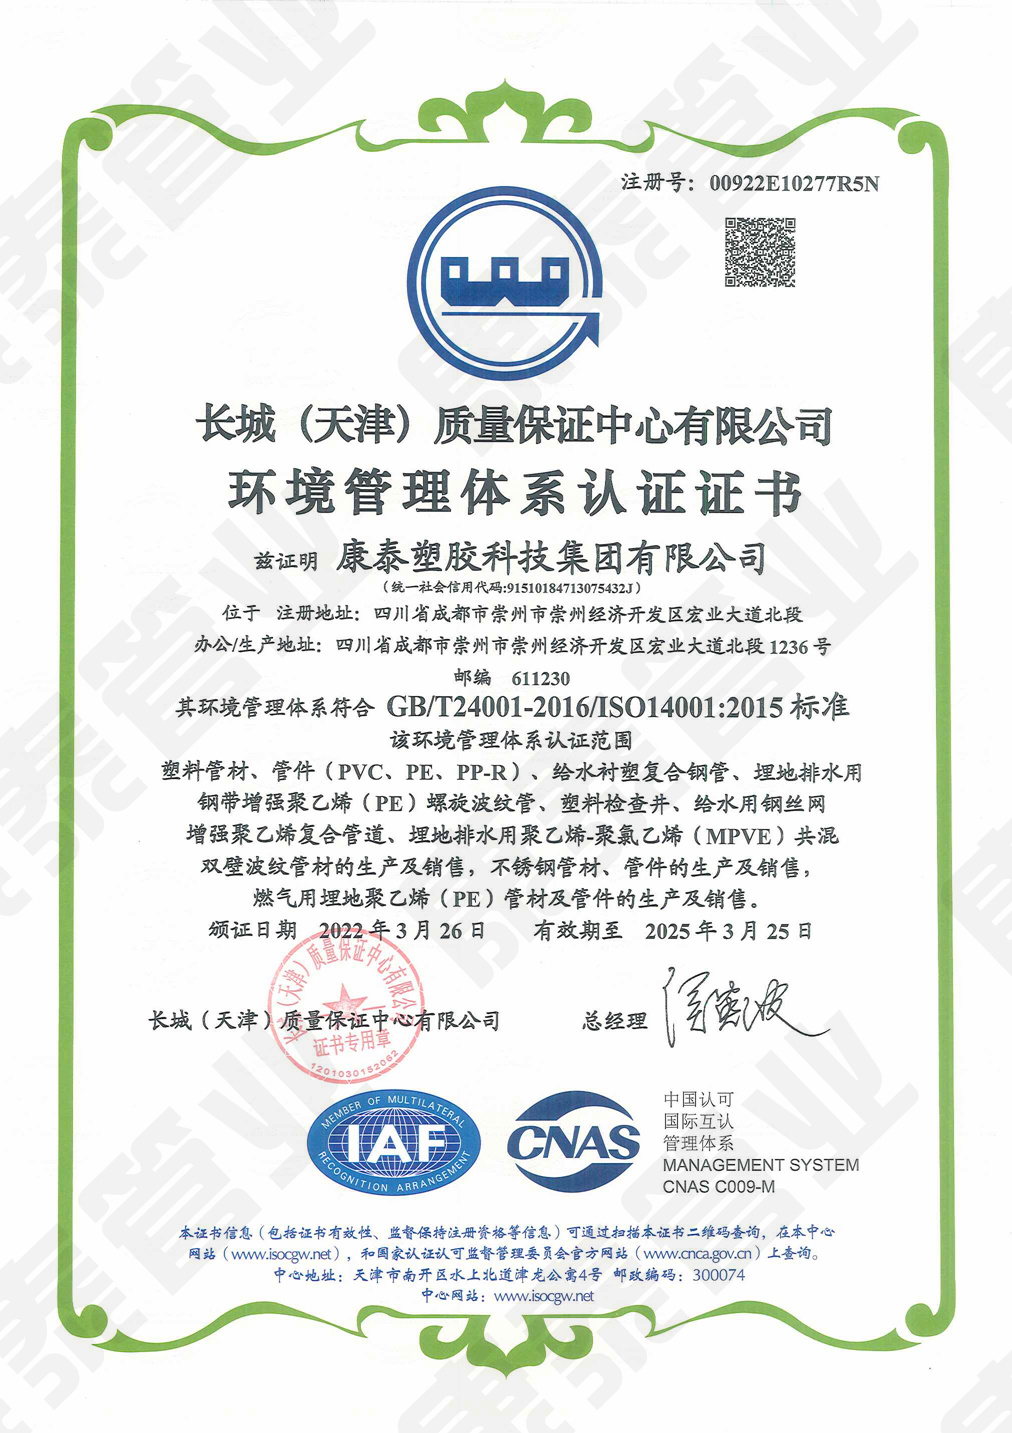 长城质量保证中心环境管理体系认证证书